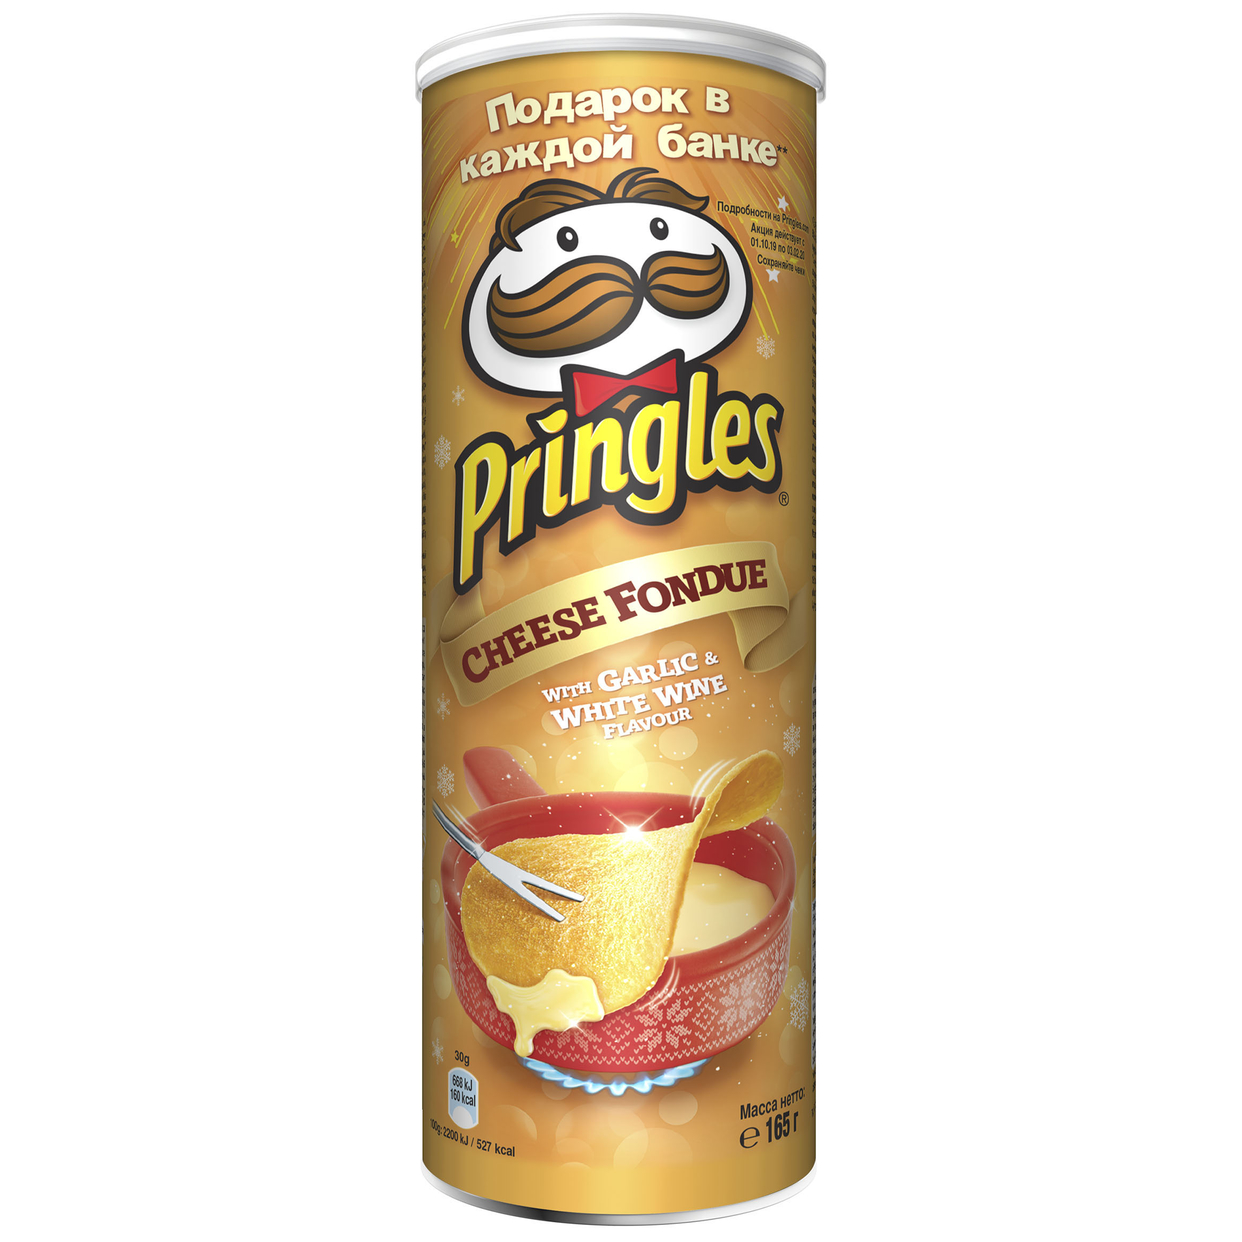 Картофельные чипсы Pringles со вкусом Сырного фондю с чесноком и белым вином, 165 гр по акции в Пятерочке